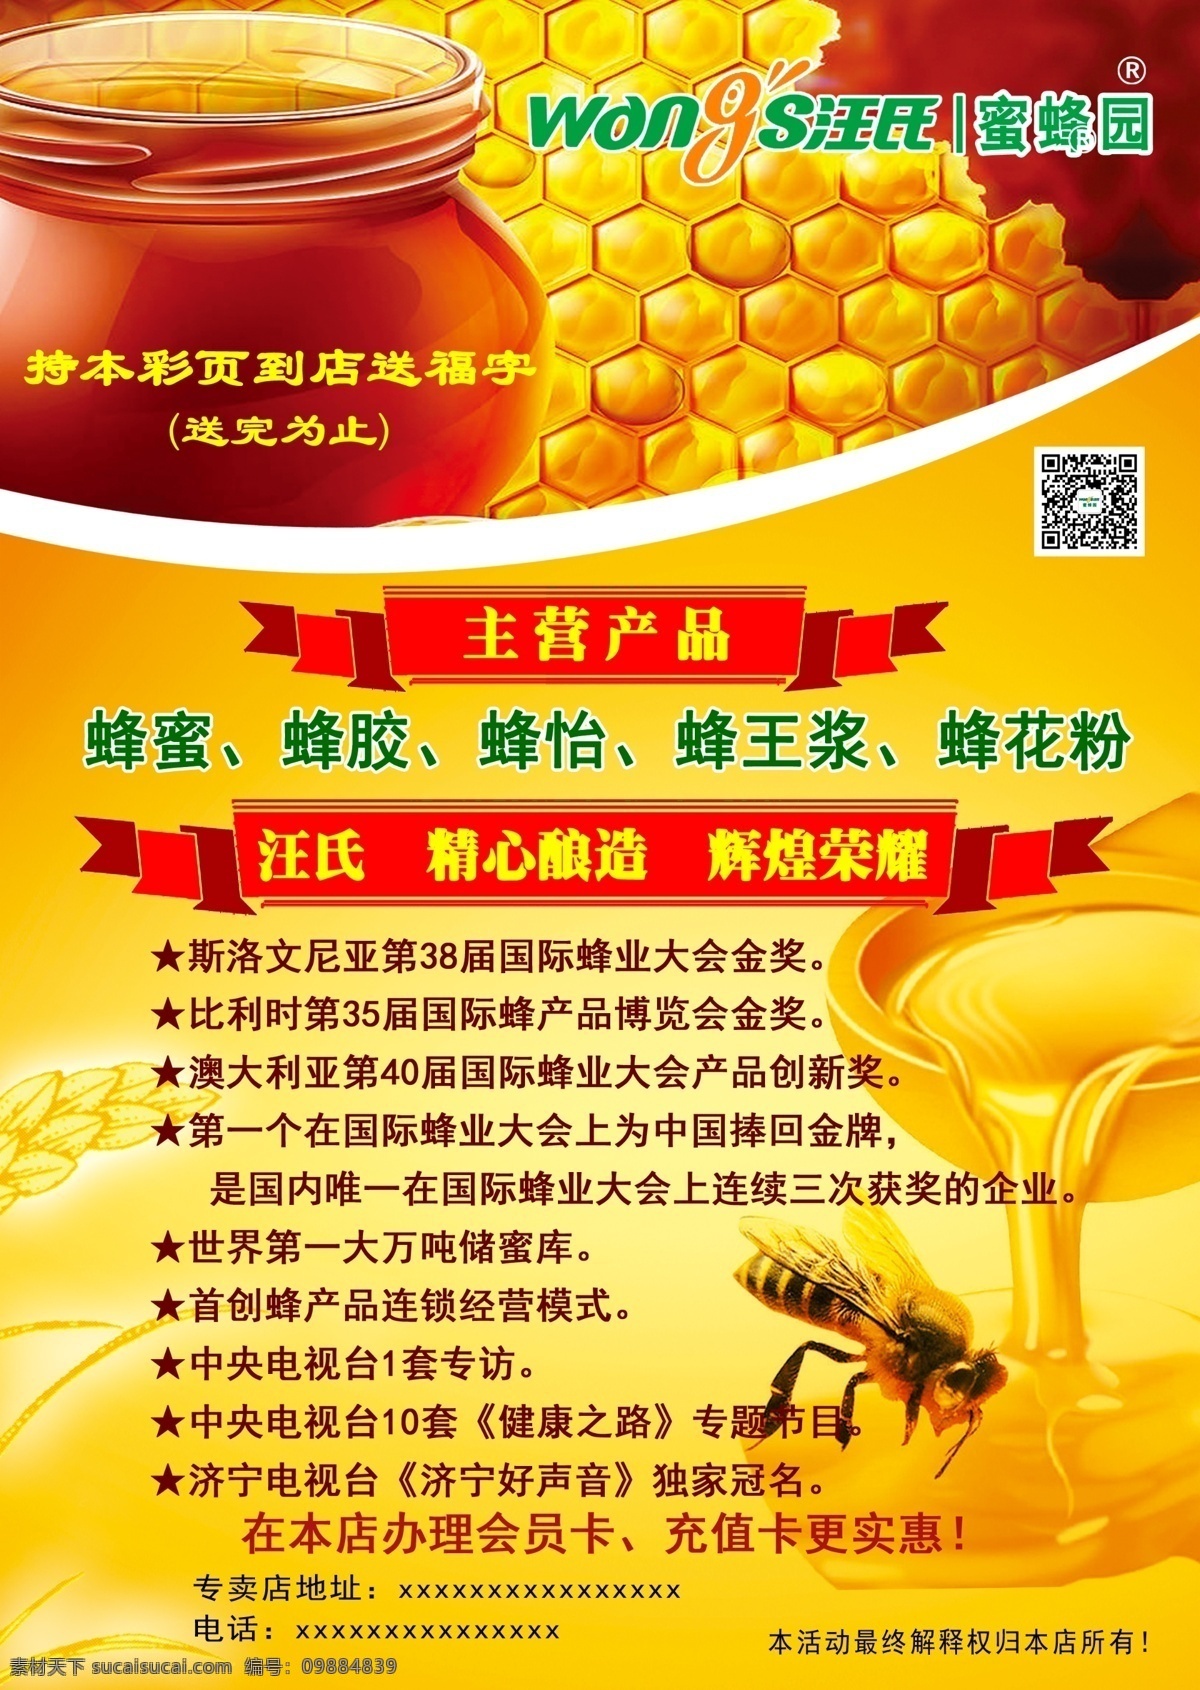 汪 氏 蜜蜂 园 广告 宣传单 汪氏蜜蜂园 奖项介绍 主营产品 dm宣传单